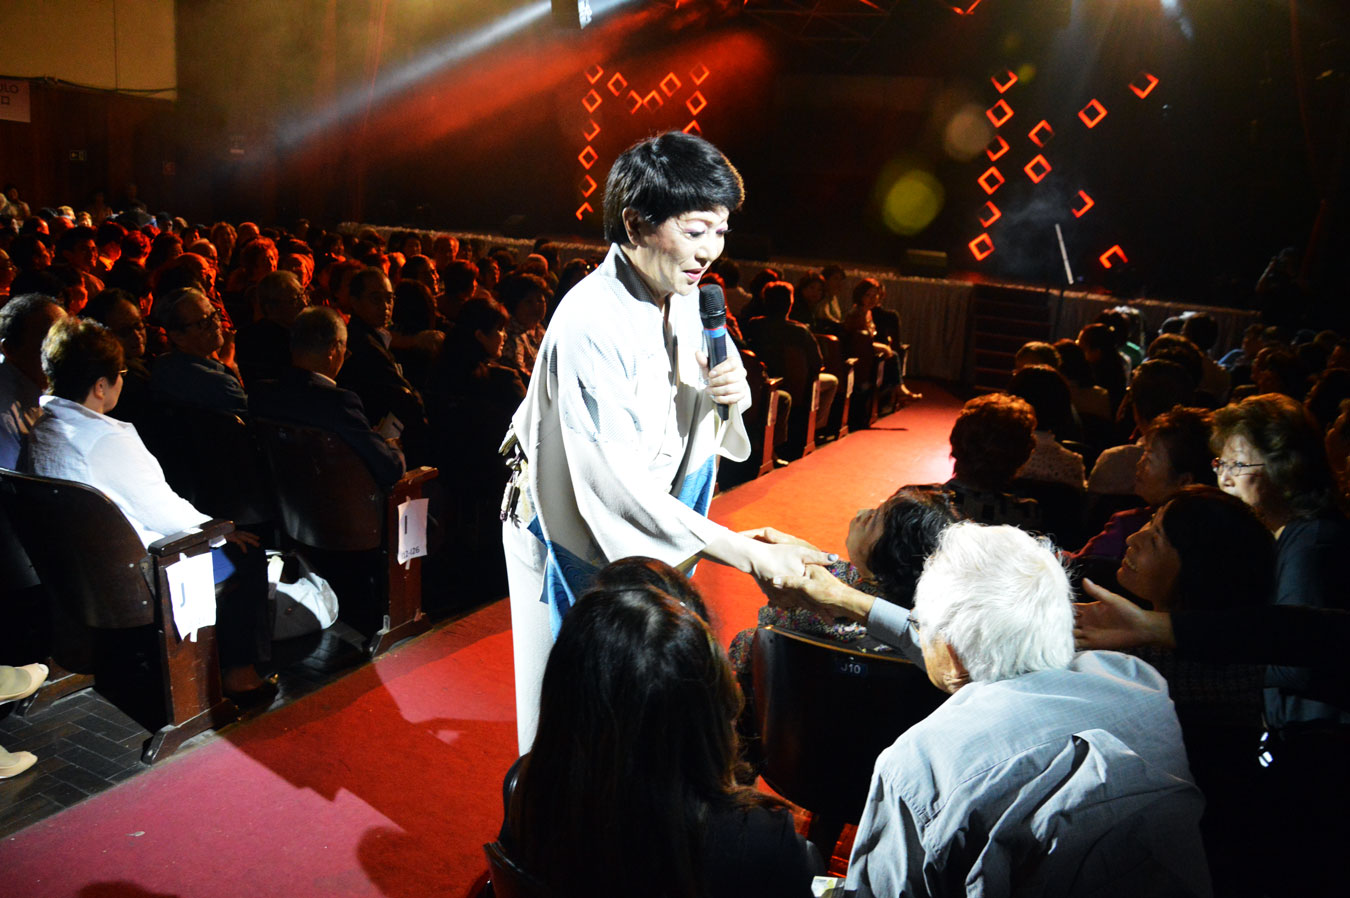 Público elogia o carisma de Mikawa. (foto: Luci Judice Yizima)